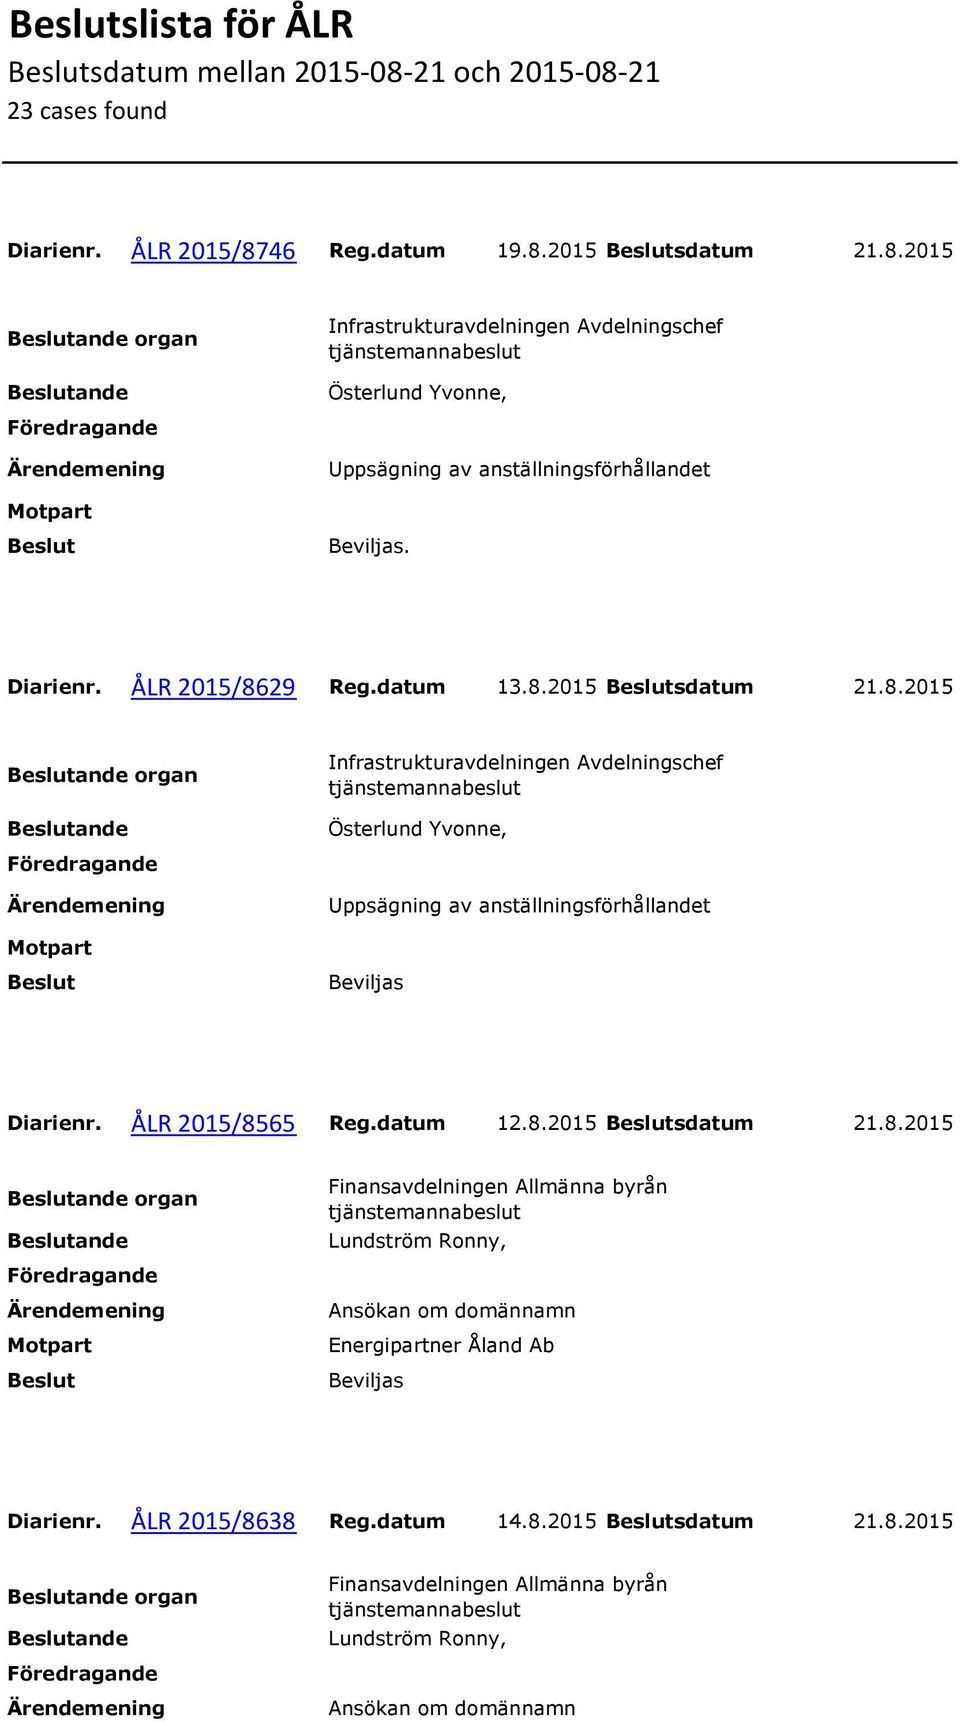 ÅLR 2015/8565 Reg.datum 12.8.2015 sdatum 21.8.2015 organ Energipartner Åland Ab Diarienr. ÅLR 2015/8638 Reg.